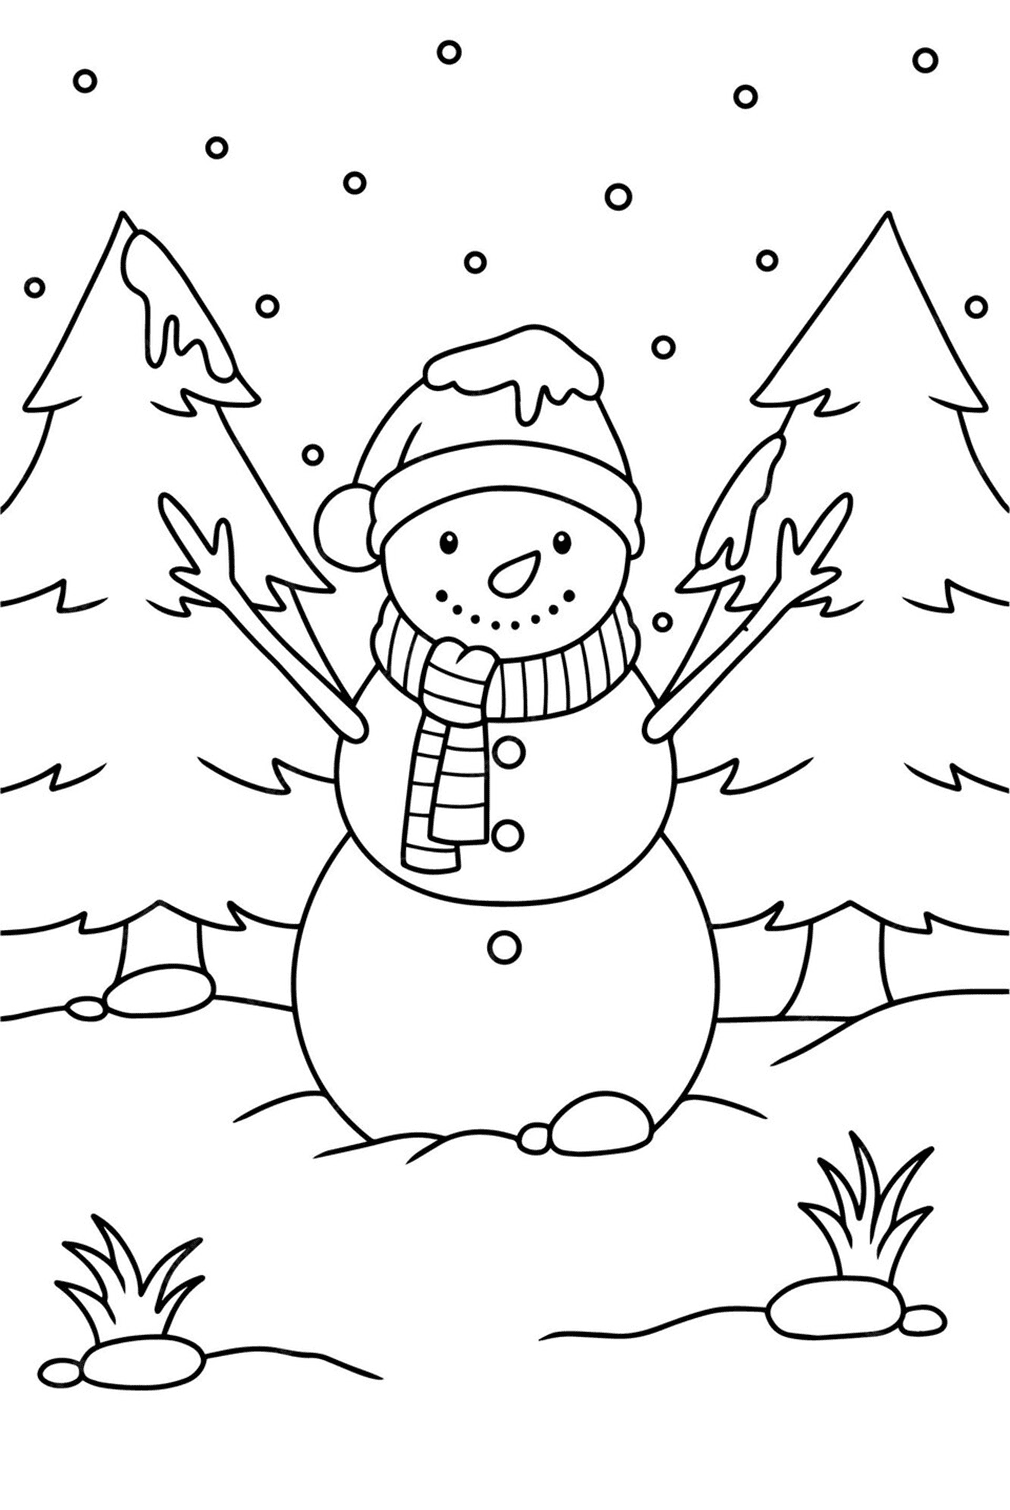 Desenho de boneco de neve fofo para colorir